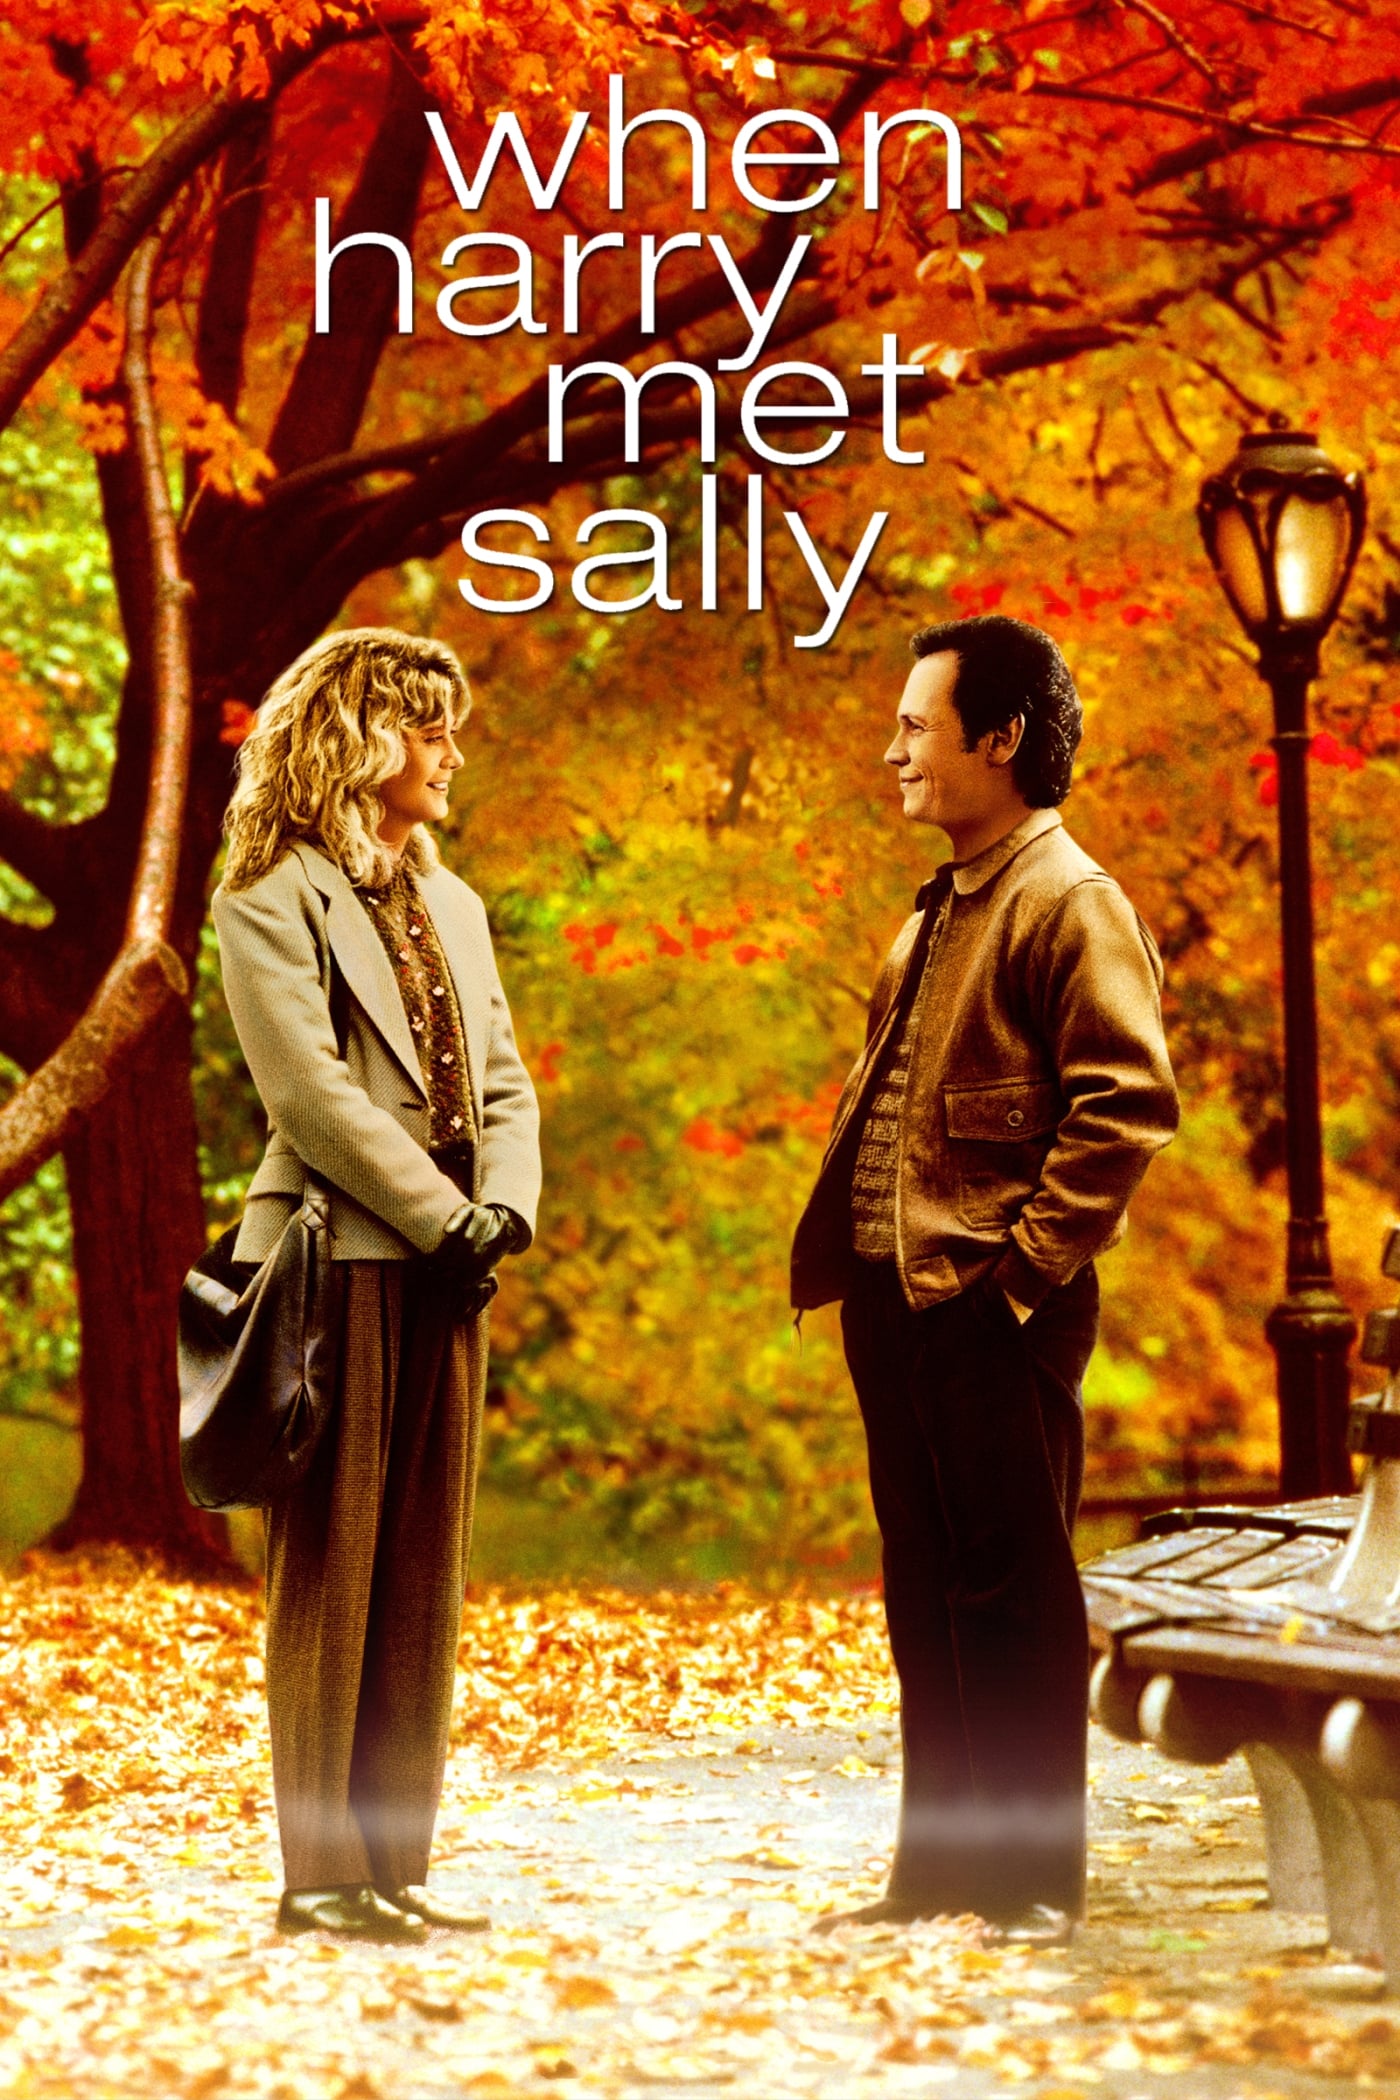 כשהארי פגש את סאלי